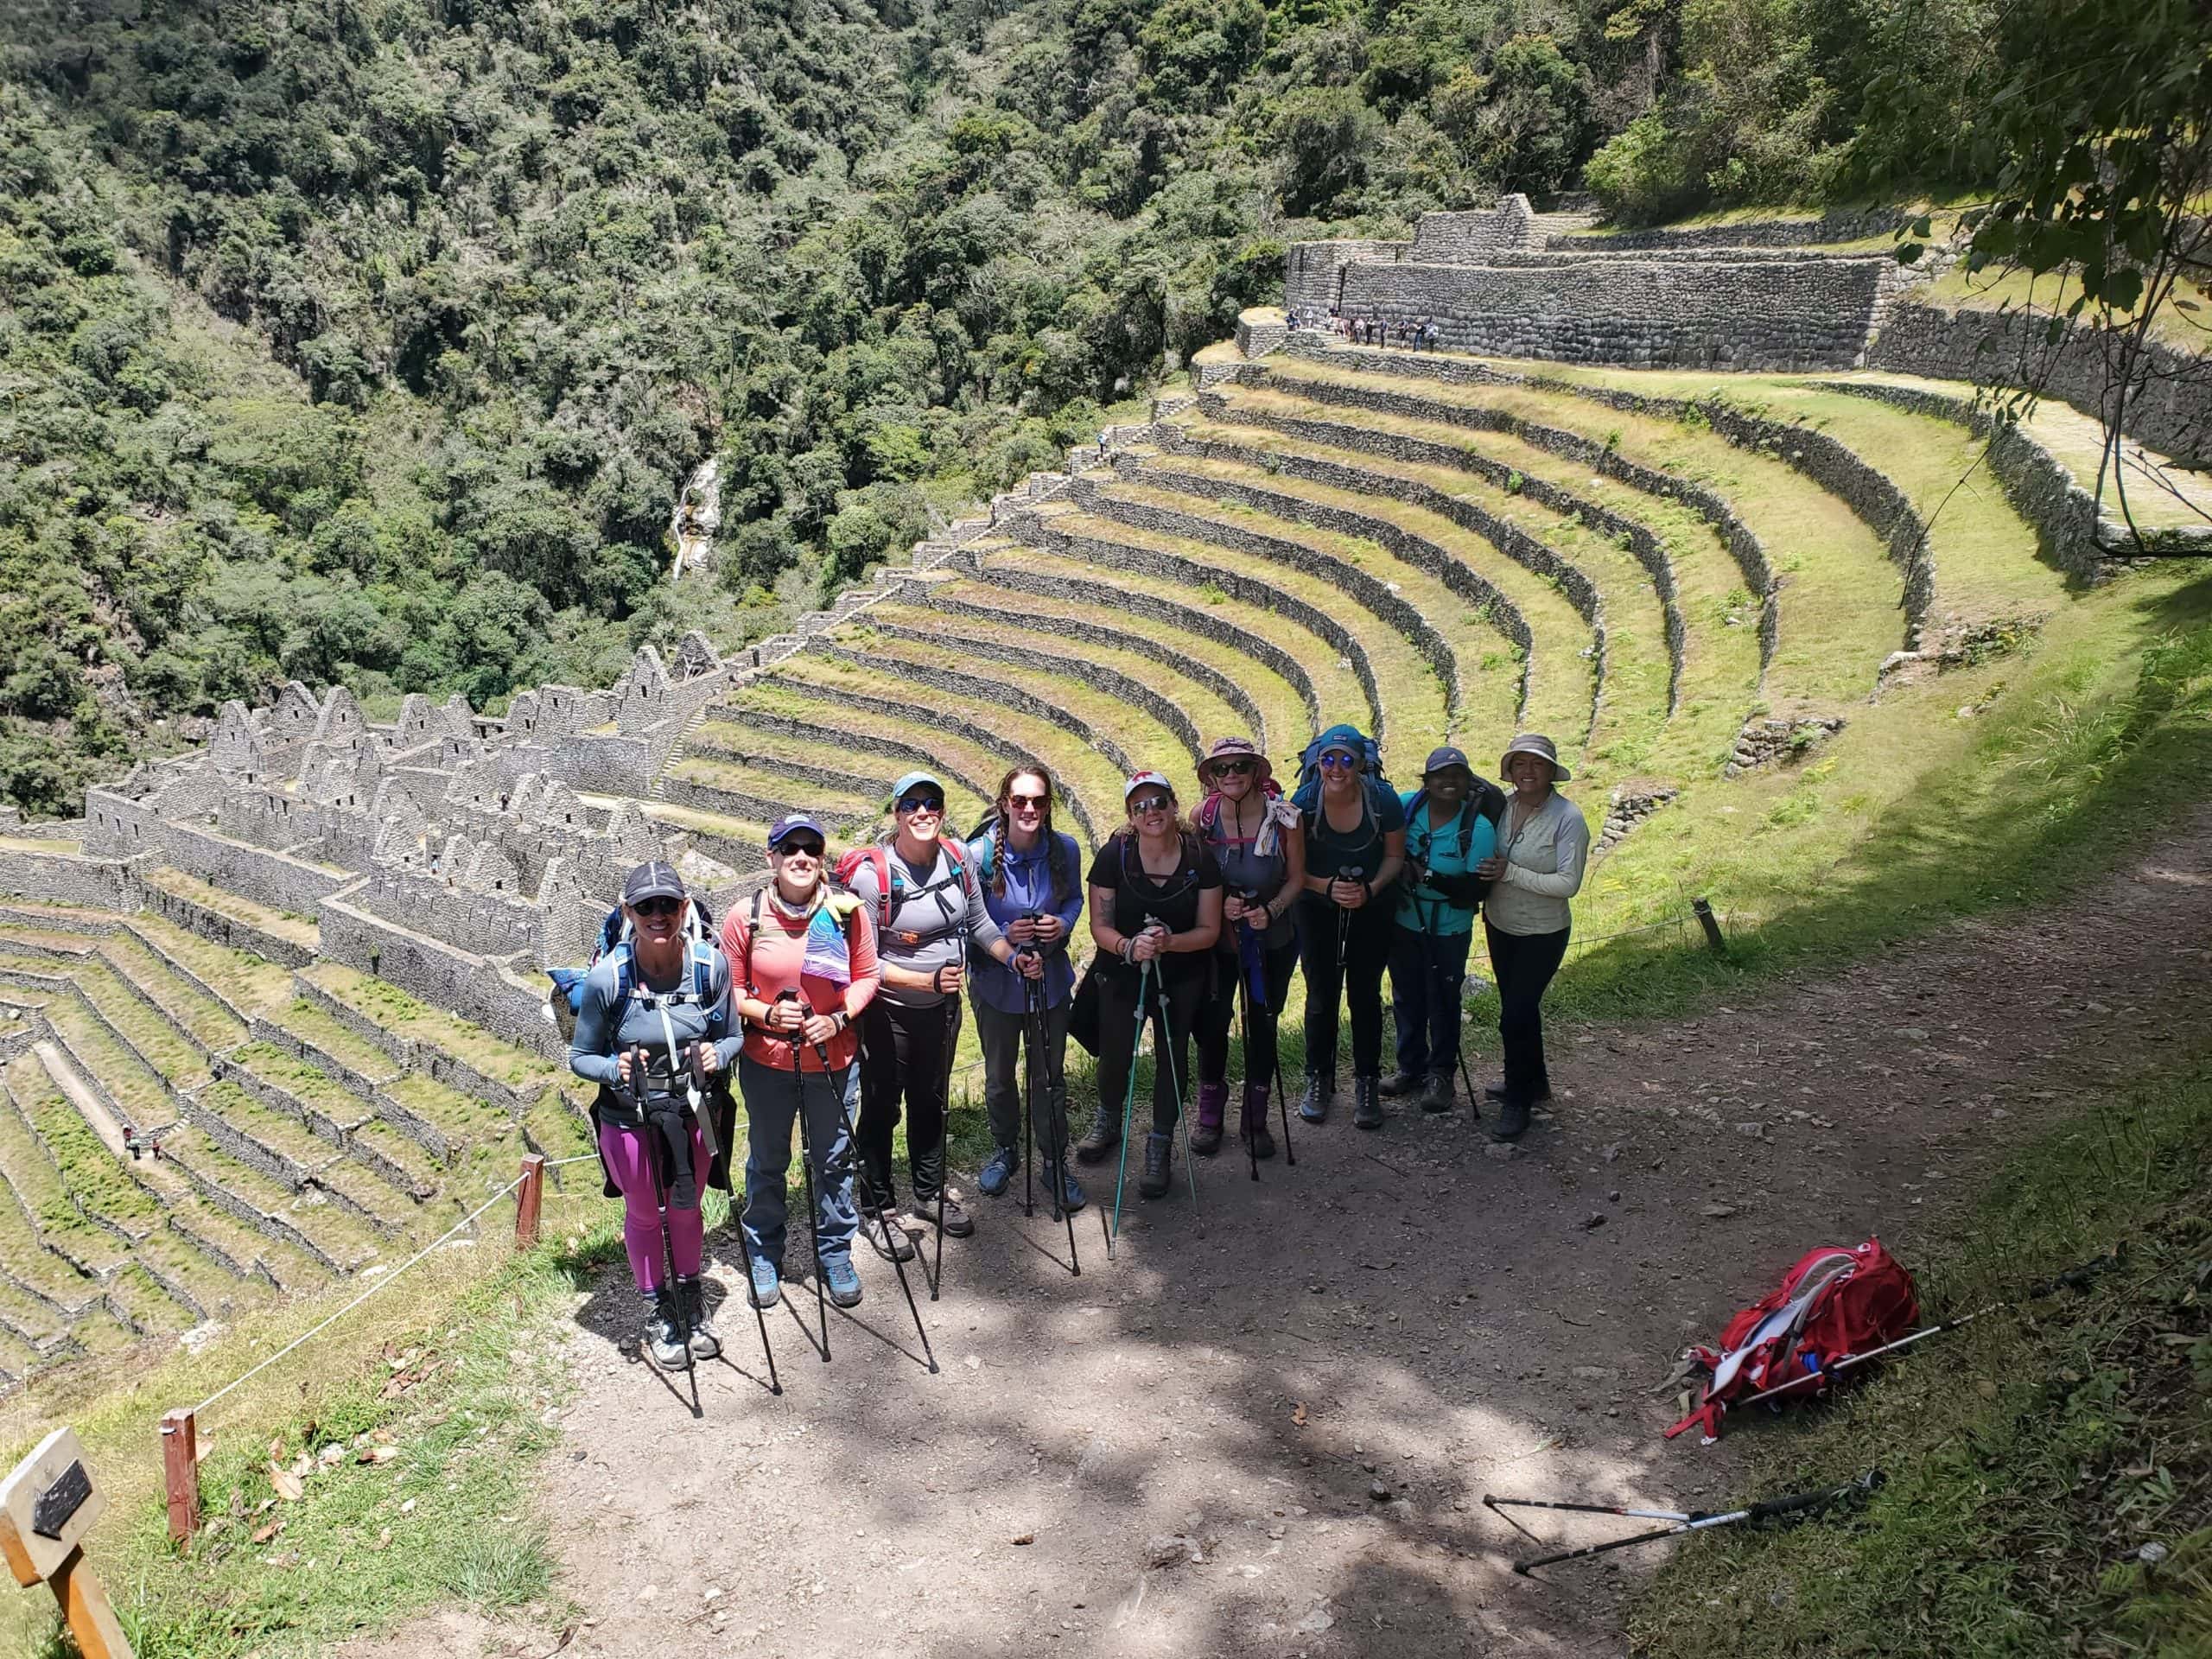 Inca Trail Trek to Machu Picchu Adventure